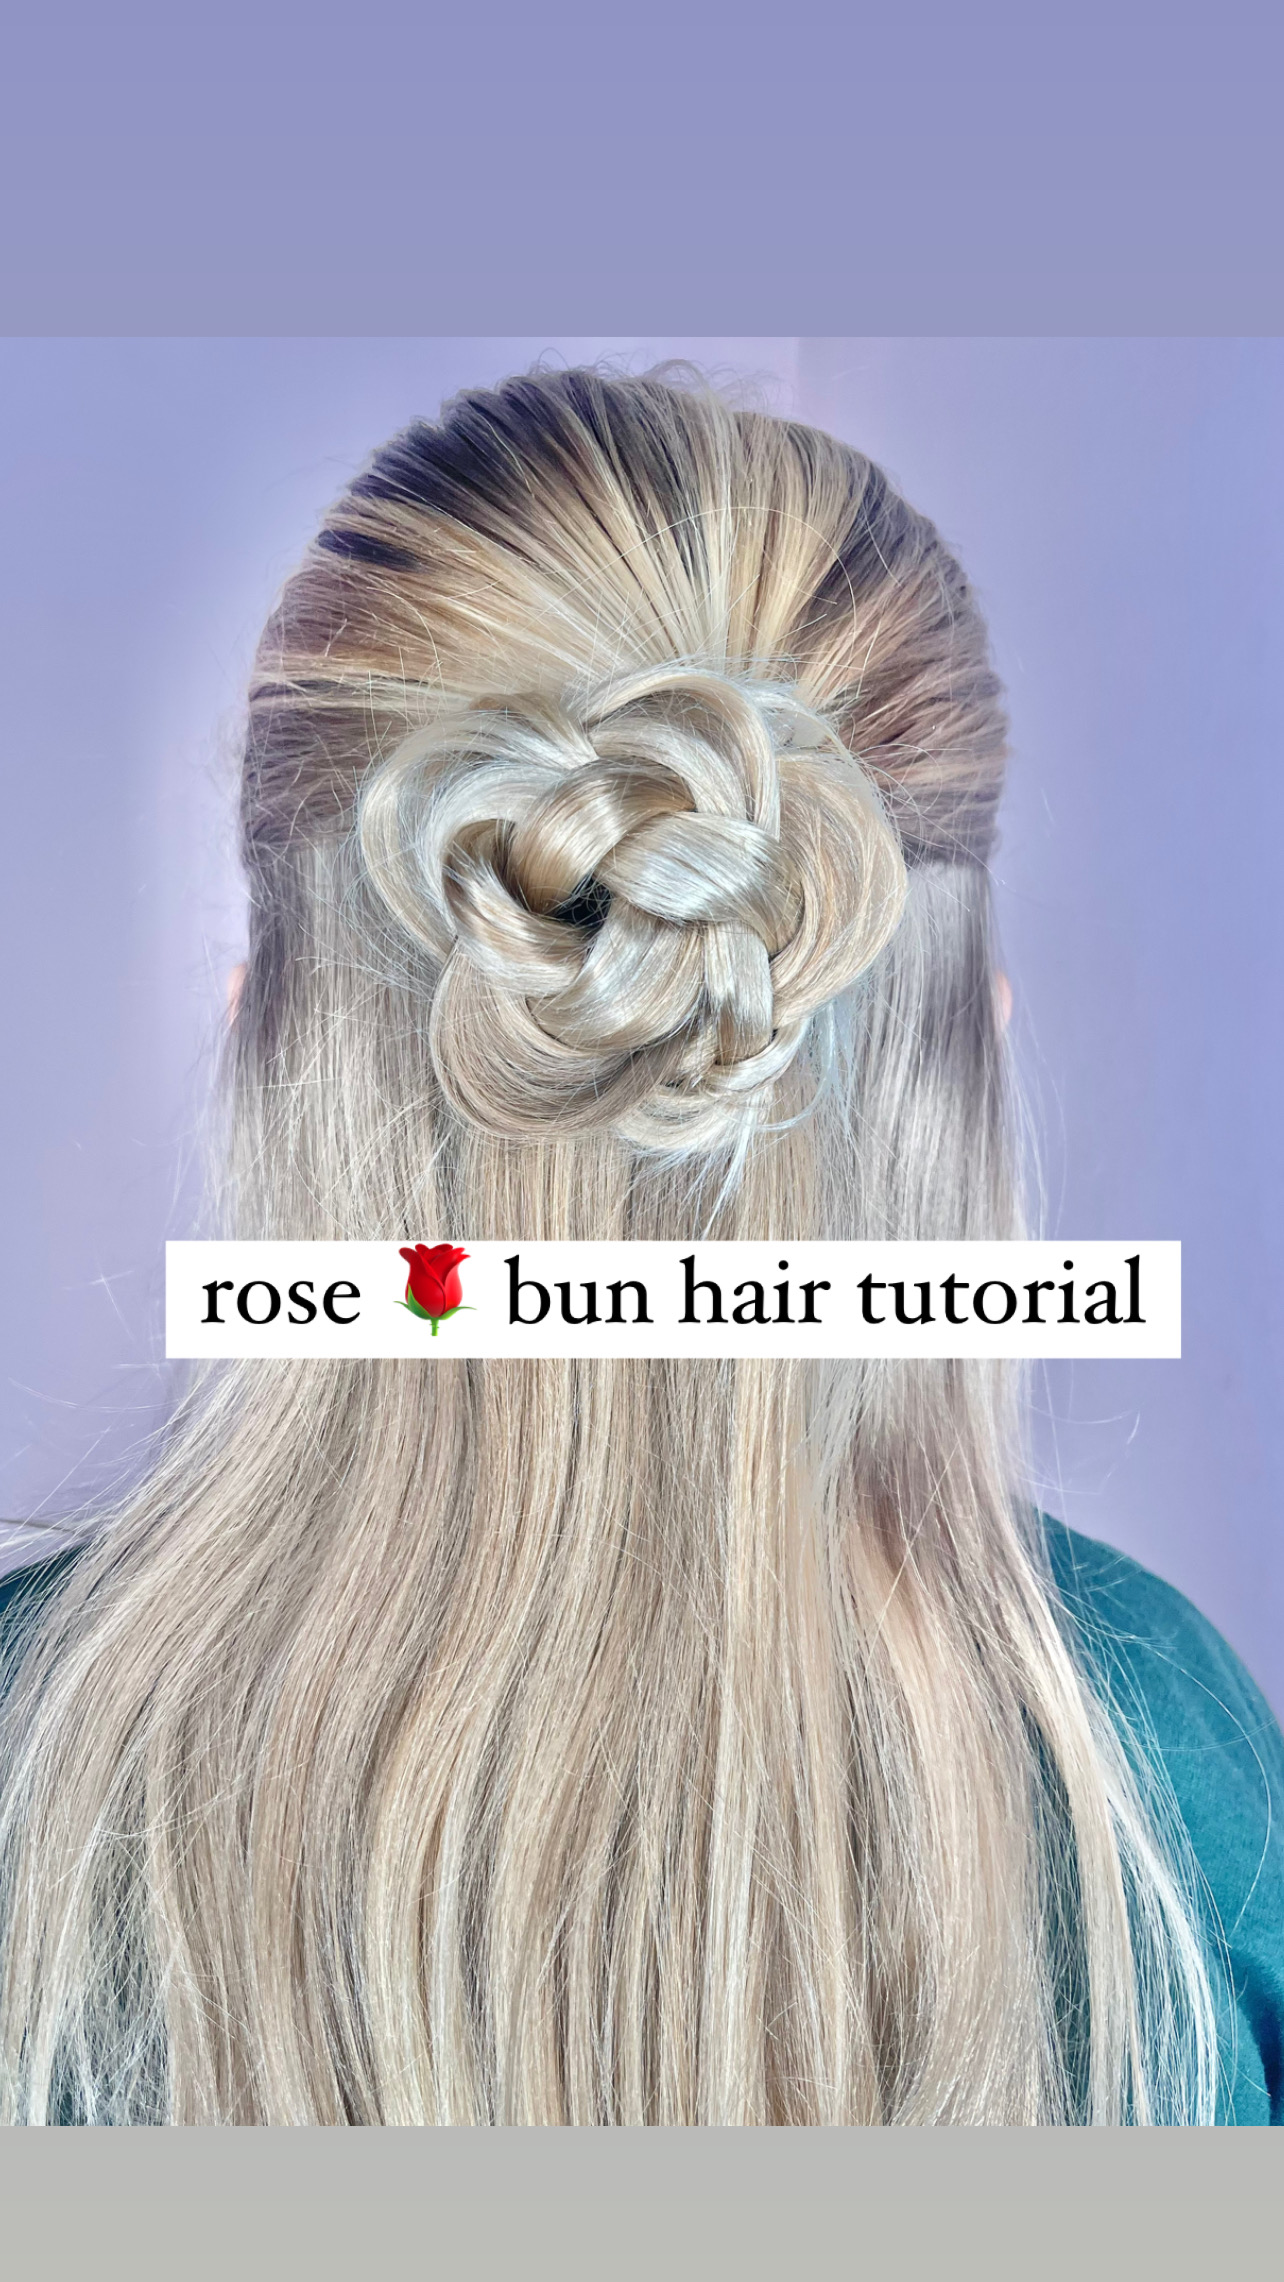 Bun (hairstyle) - Wikipedia